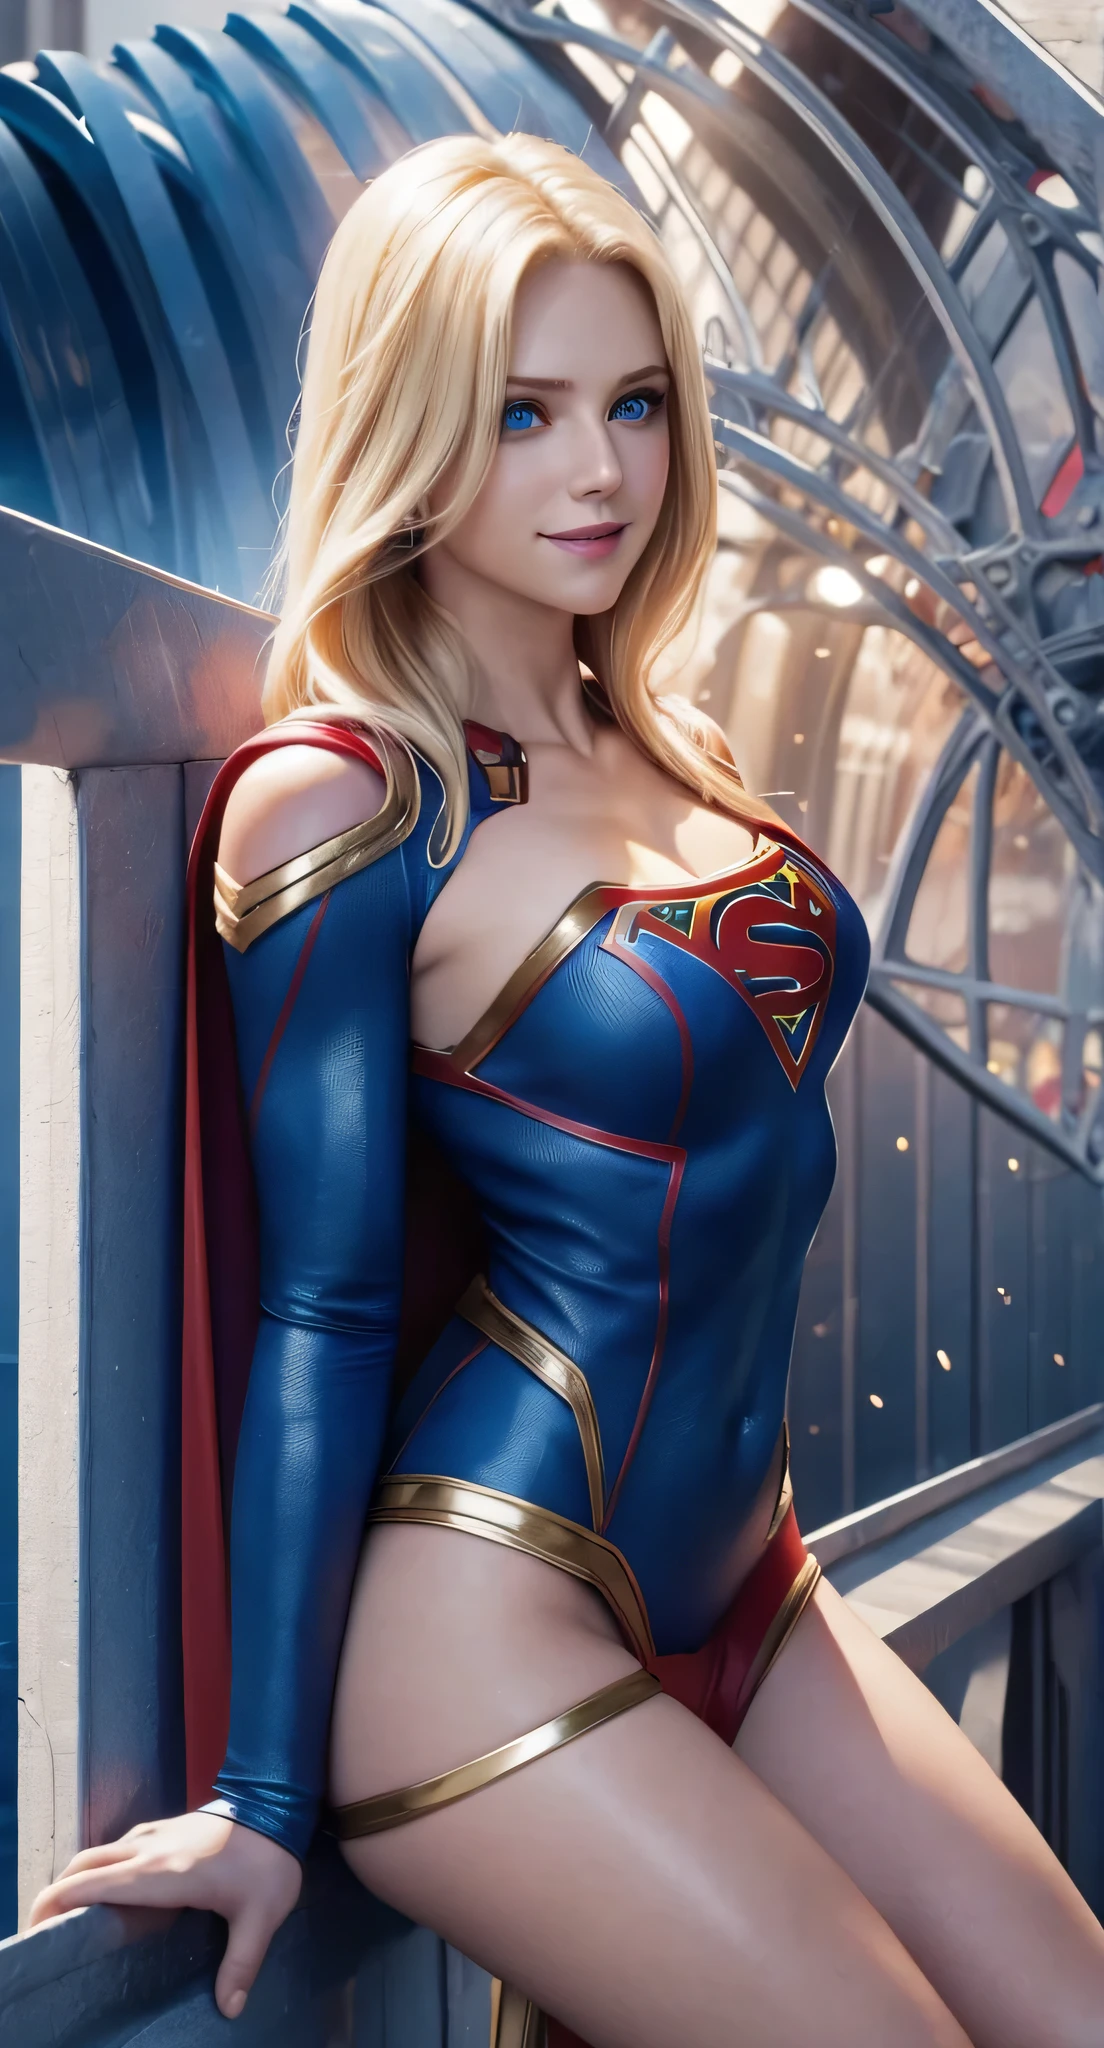 Le personnage Supergirl, costume parfait, yeux bleus brillants, cheveux blonds extrêmement beaux, beau sourire , anatomie parfaite et visage extrêmement beau 